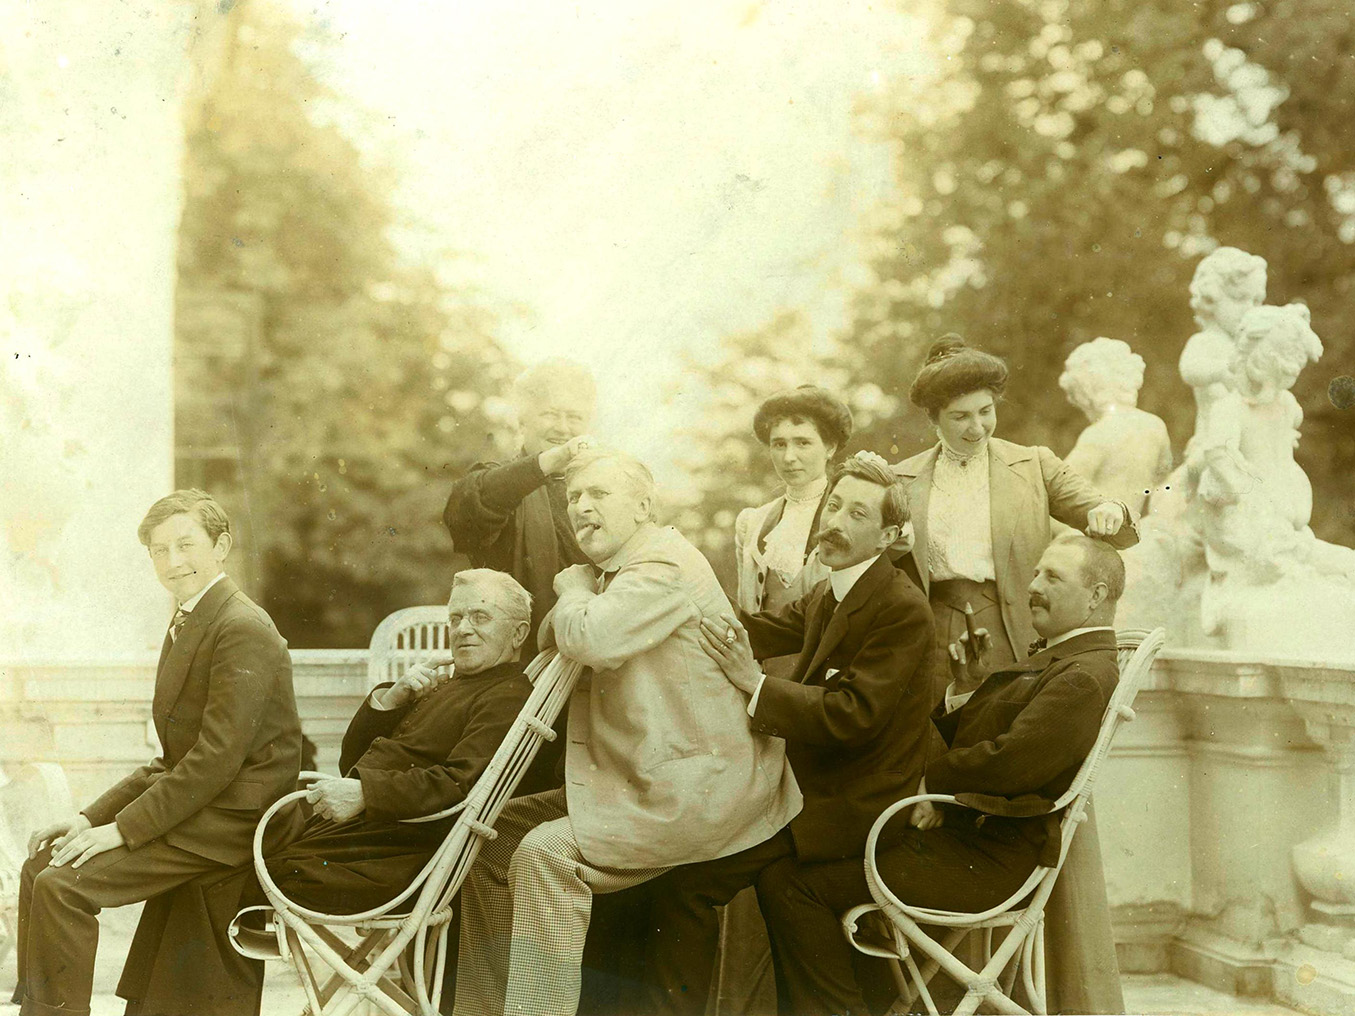 Stara, pożółkła fotografia z początków XX wieku, utrzymana w żartobliwym tonie. Grupa osób na tarasie. Pięciu mężczyzn w różnym wieku, siedząc na kolanach poprzednika tworzy „wagoniki”. Za nimi trzy kobiety, dwie młodsze i jedna starsza, chwytają dłonią za ich włosy na czubku głowy.